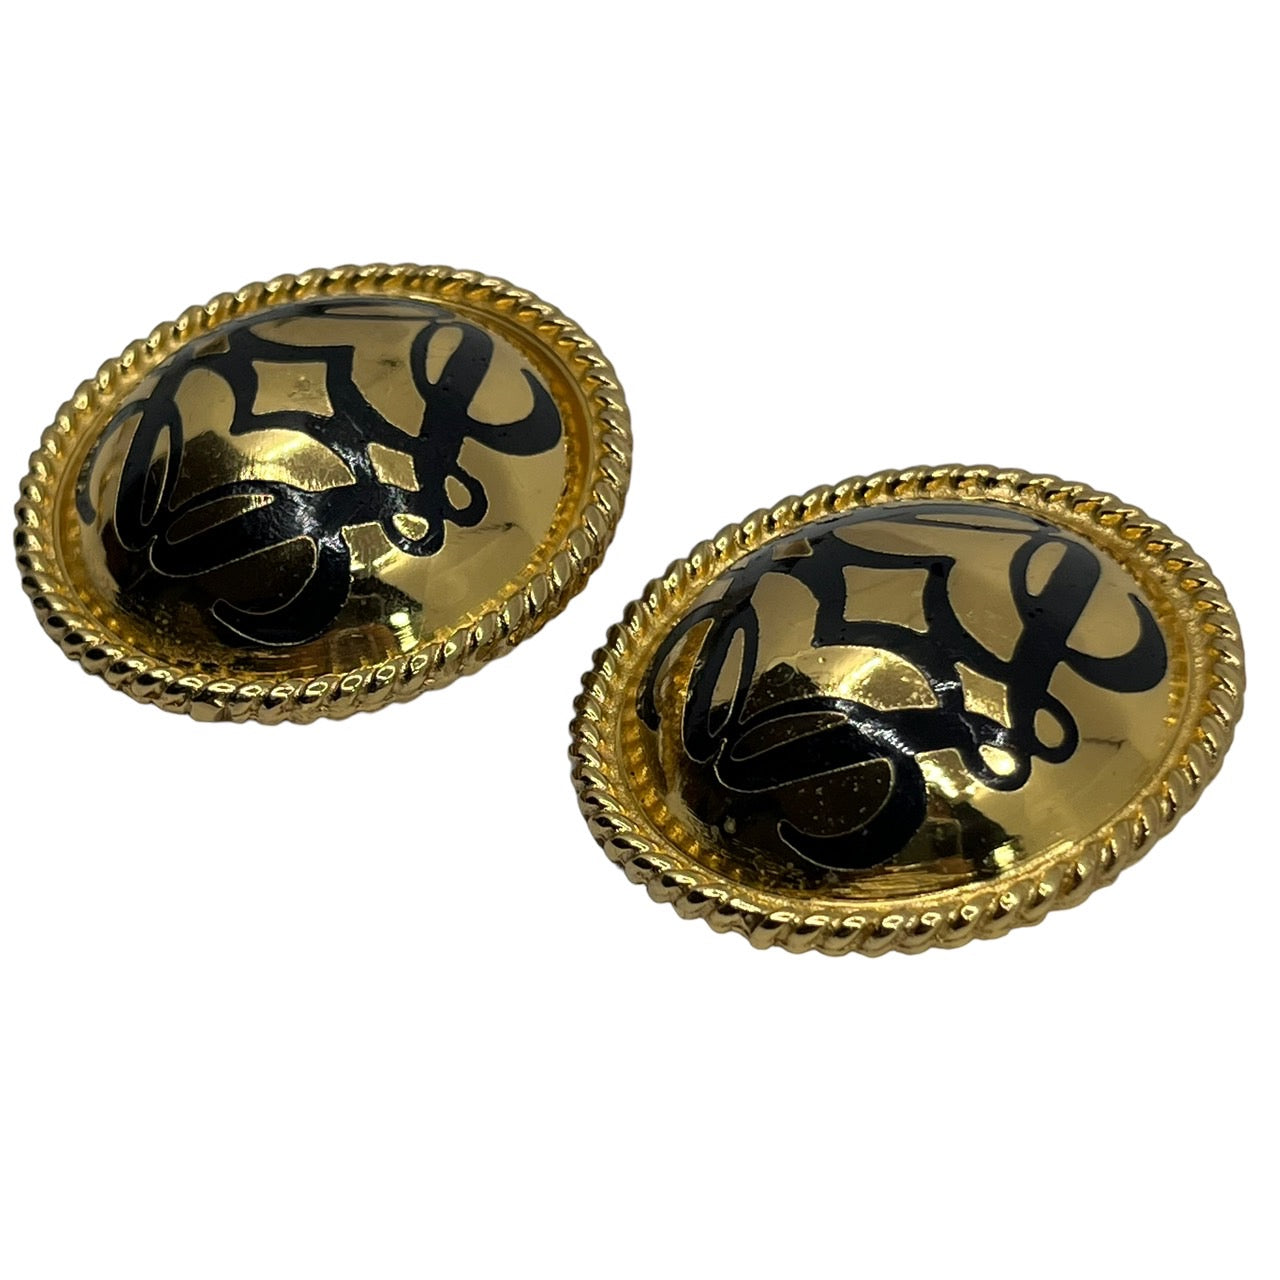 LOEWE(ロエベ) vintage anagram logo gold earrings/ヴィンテージアナグラムロゴイヤリング/大ぶり ゴールド×ブラック スペイン製